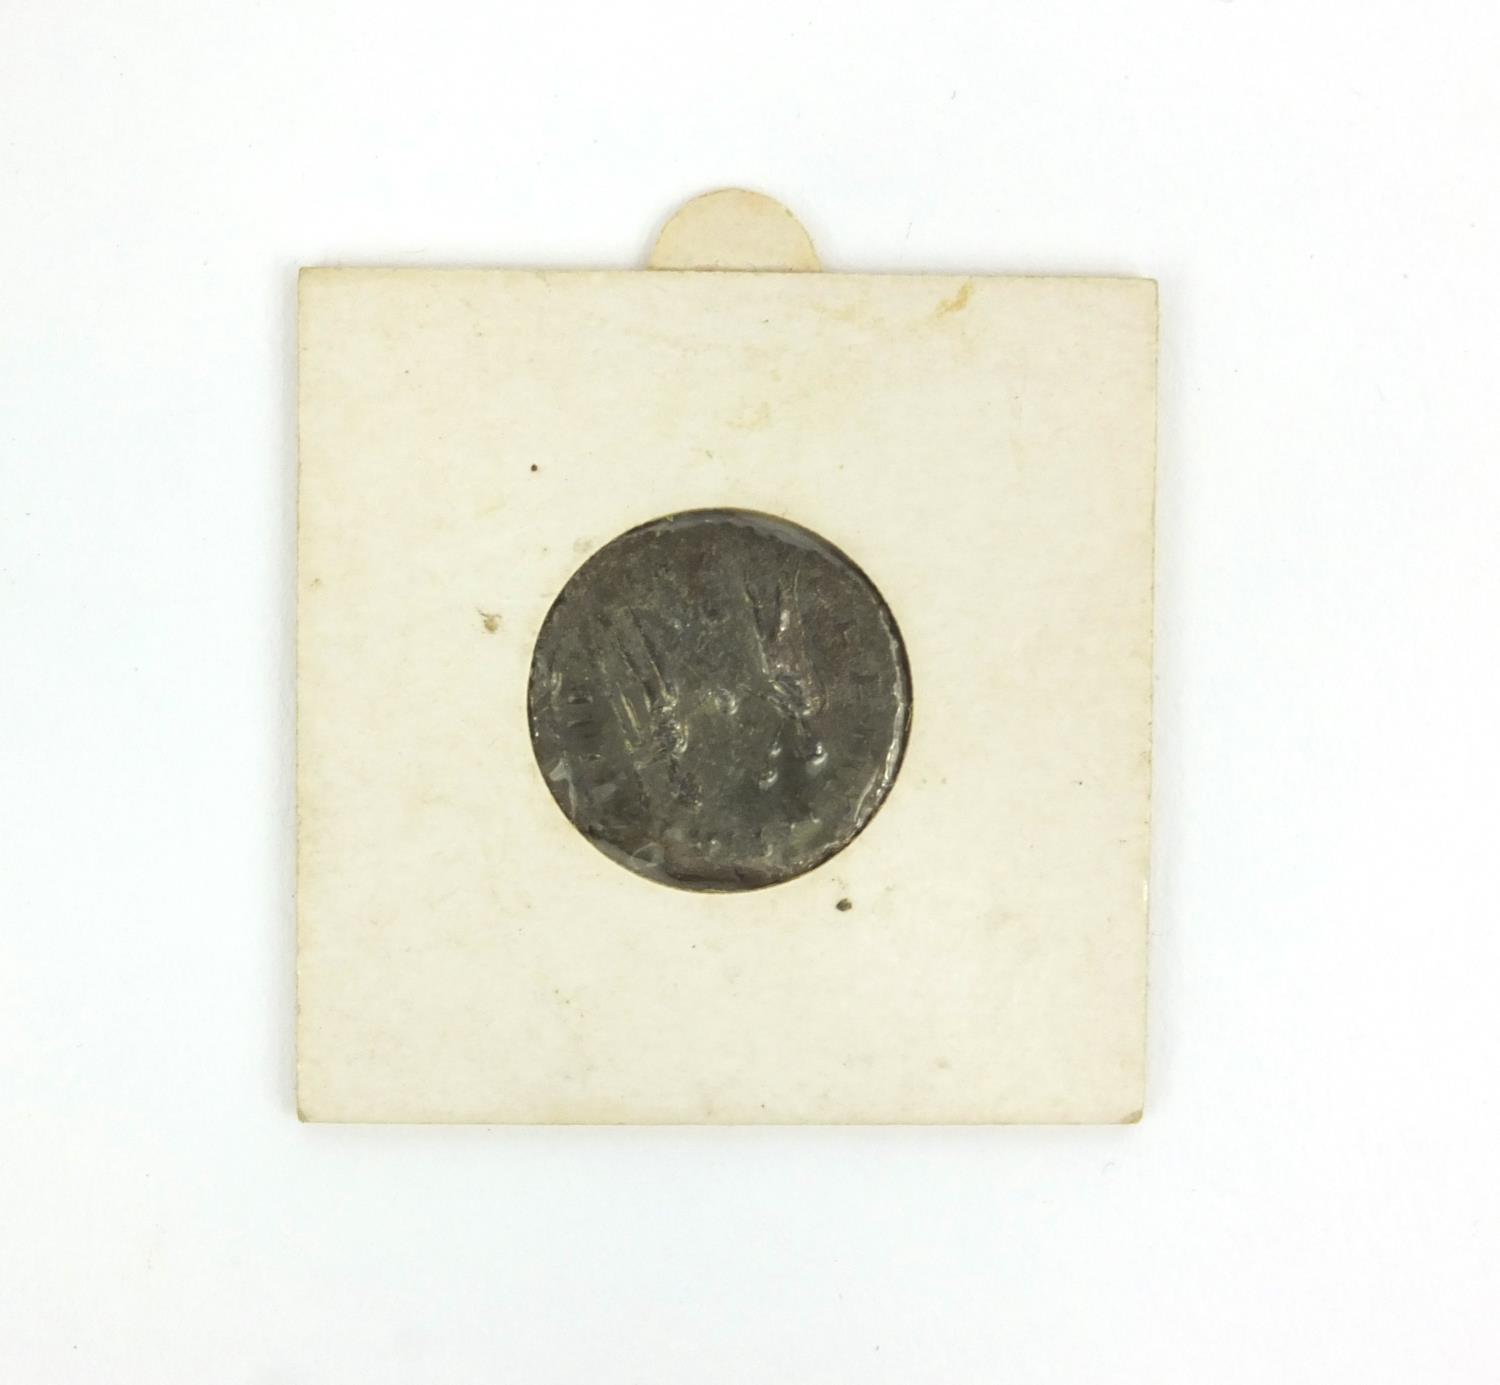 Antoninianus Probus AD276-82 Roman coin, 2.5cm diameter - Image 2 of 3